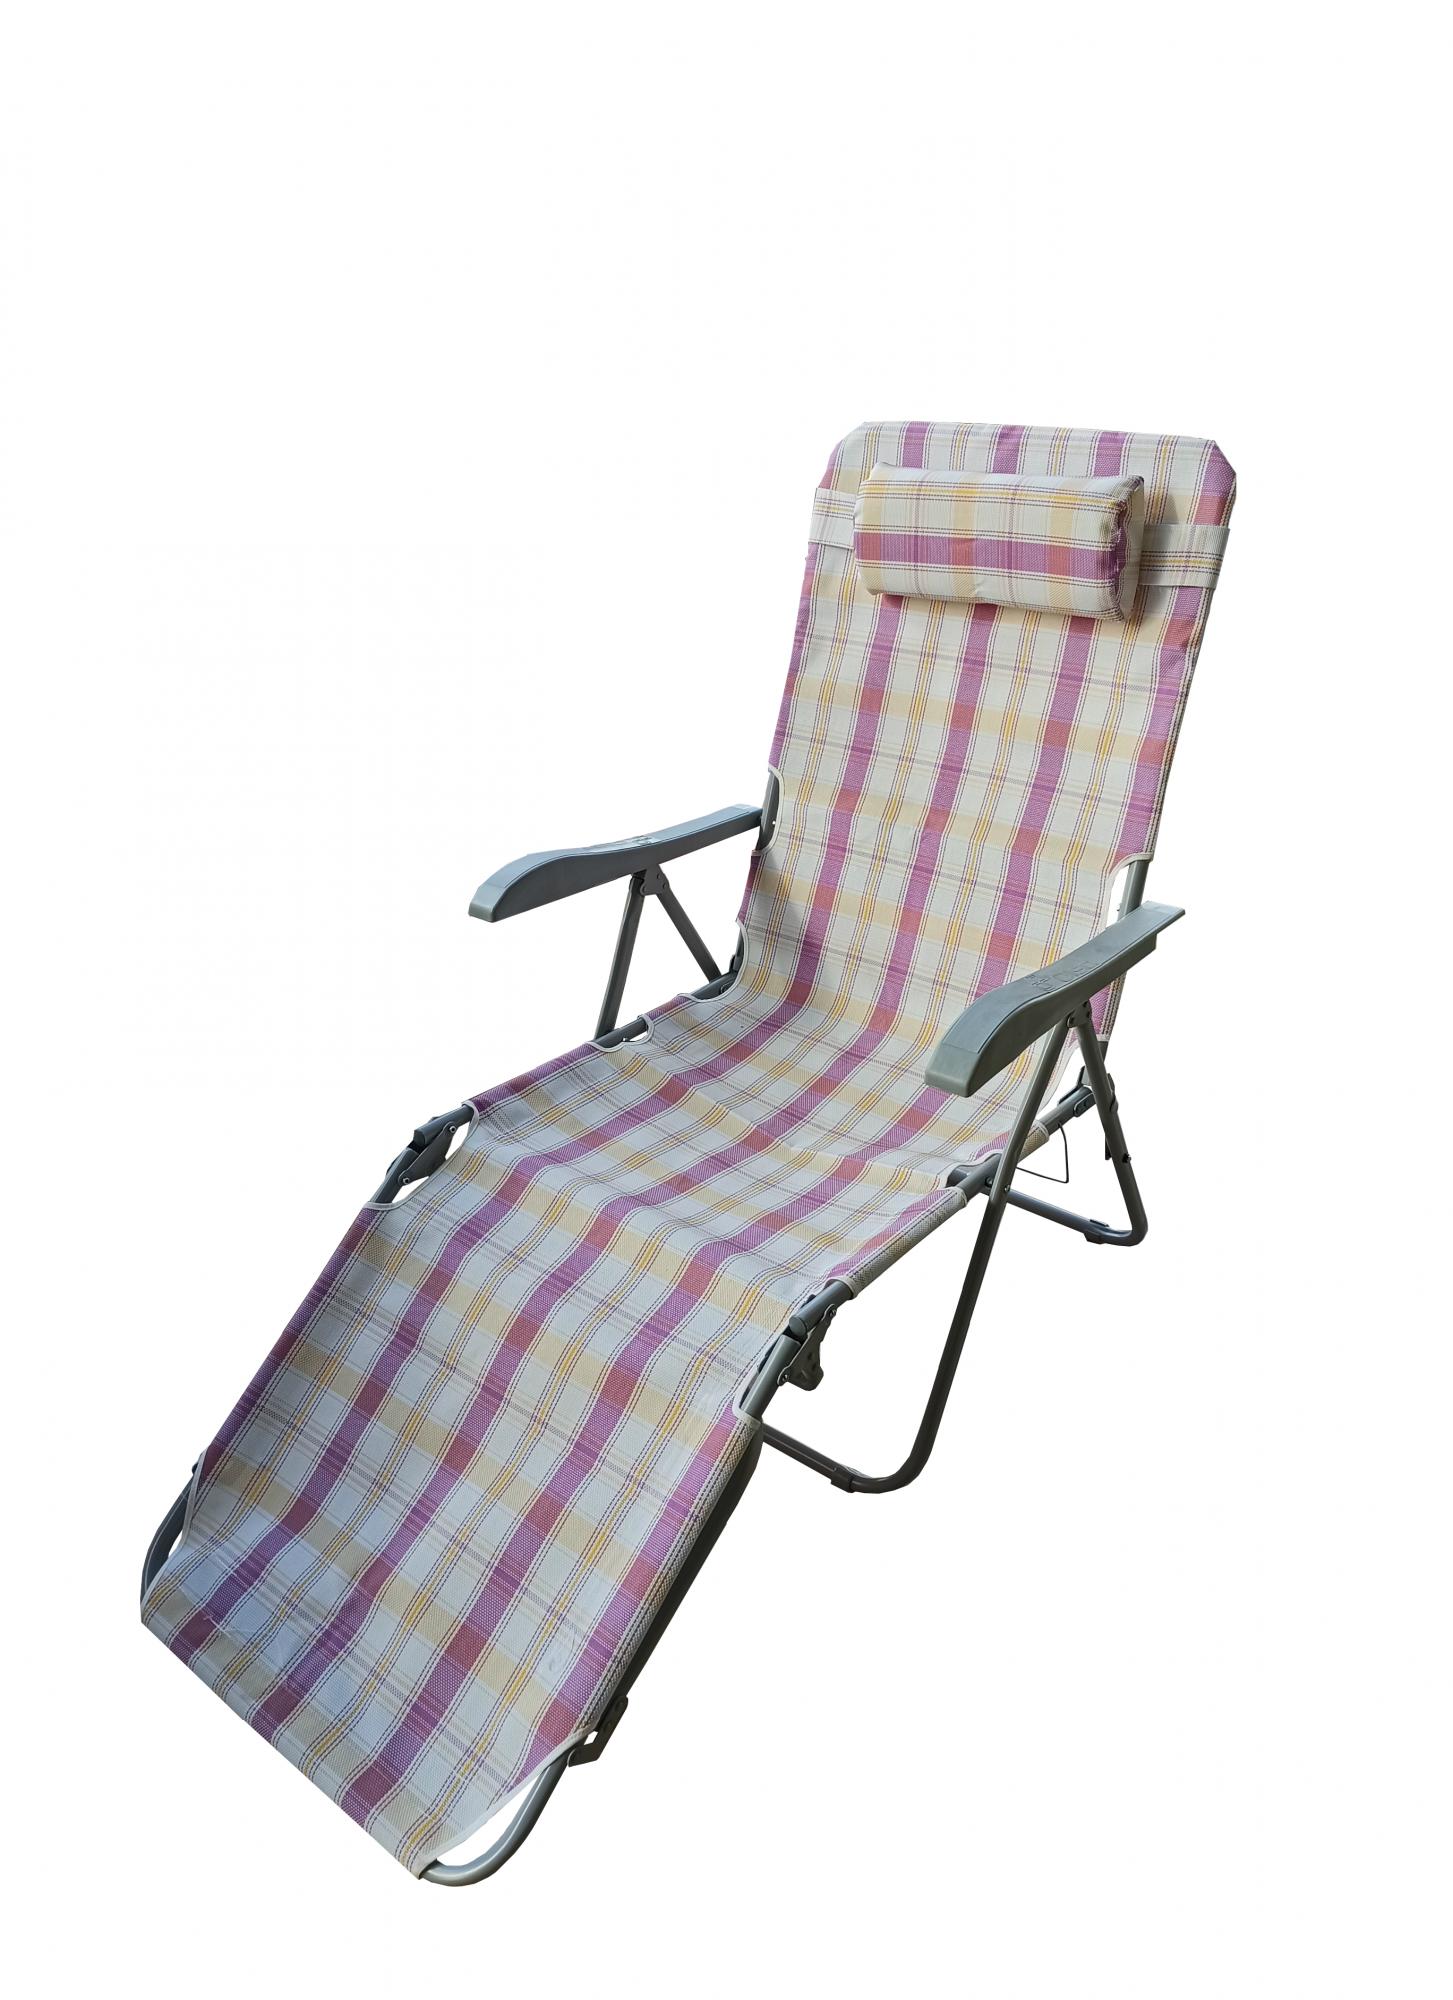 Кресло -шезлонг Taiti, разноцветный,серый, без м/э